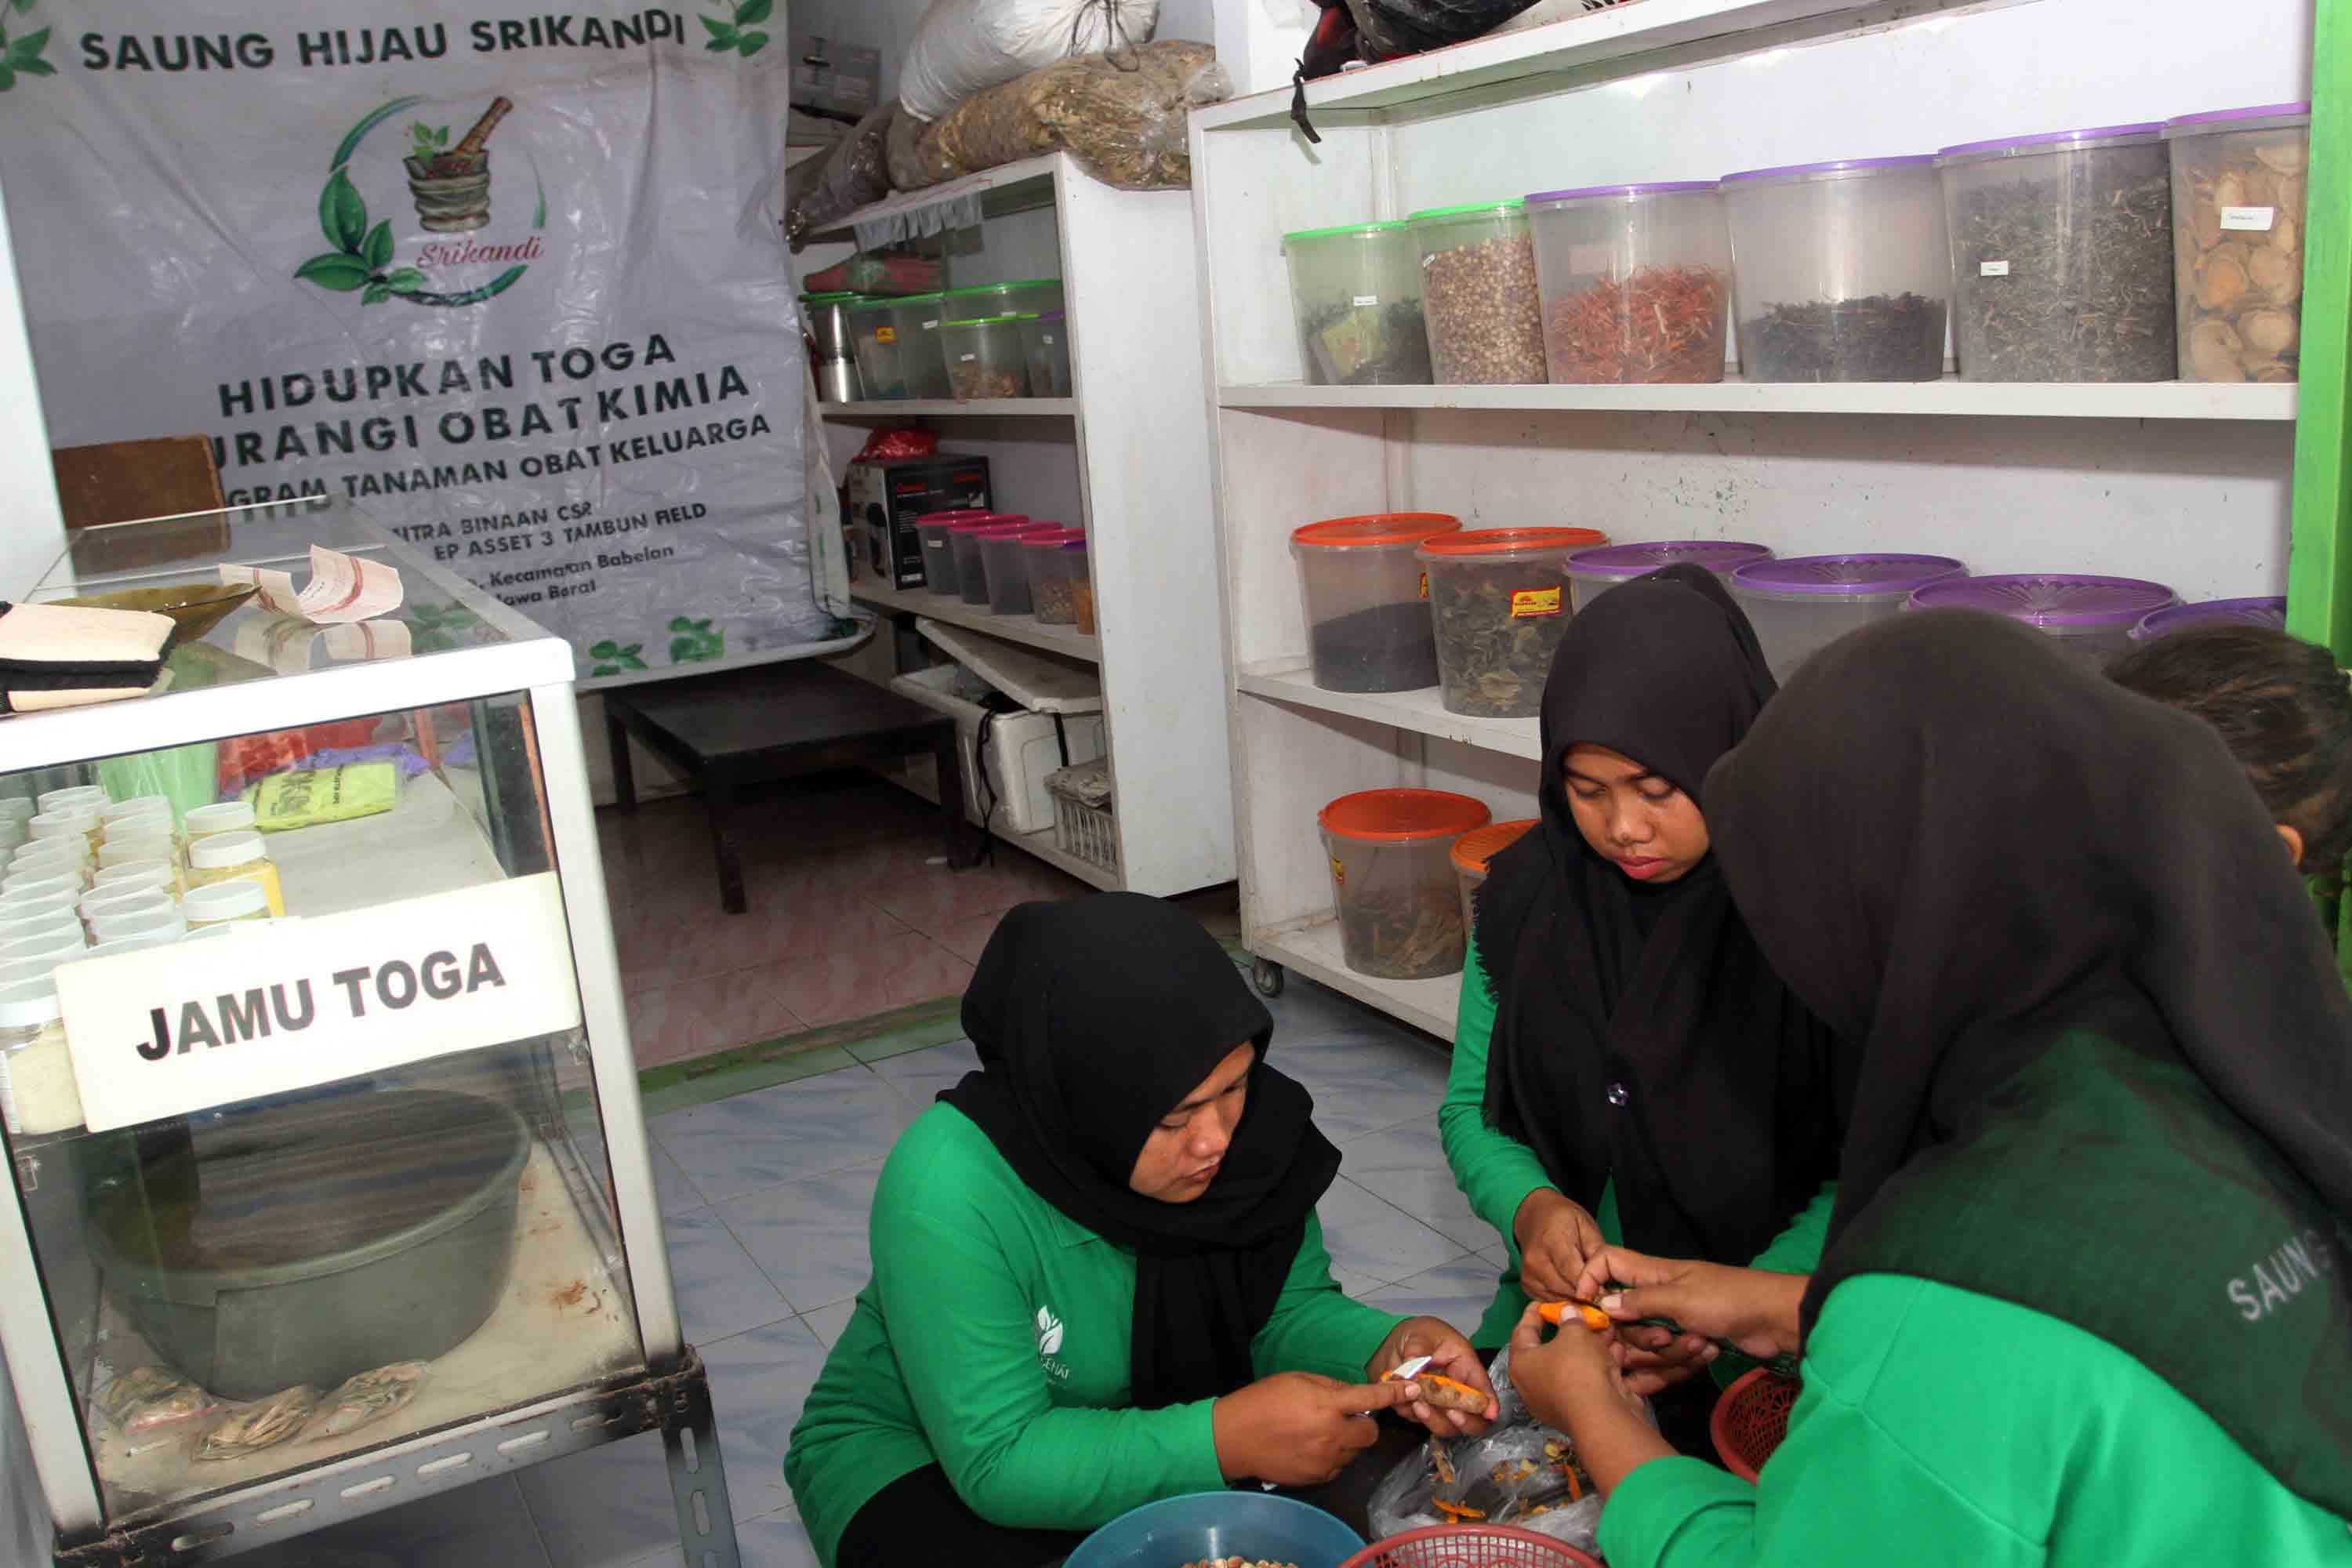 Melihat Kegiatan Komunitas Saung Hijau Srikandi meracik minuman Herbal yang sangat diminati saat Pandemi 4